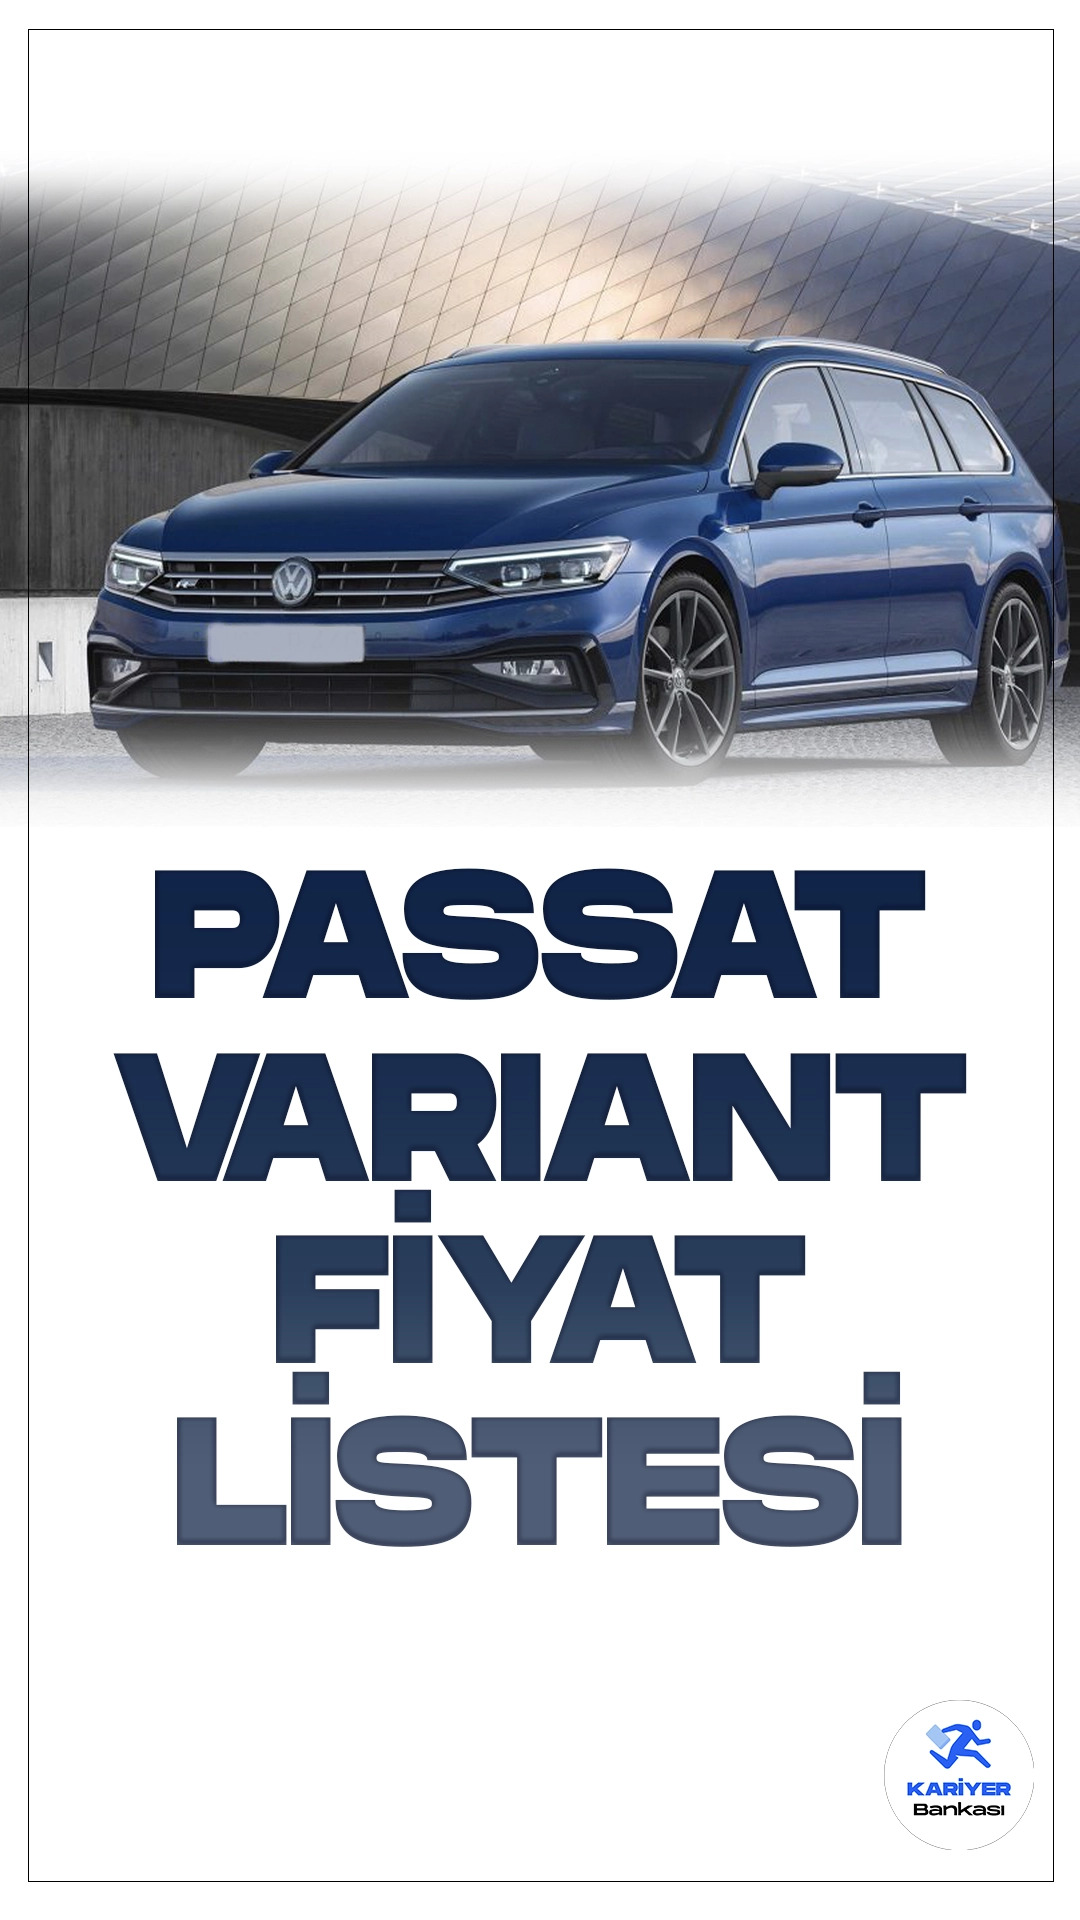 Passat Variant Şubat 2024 Fiyat Listesi Yayımlandı.Volkswagen, yenilenen Passat Variant modeliyle otomobil severlere heyecan verici bir yenilik sunuyor. Tasarımı ve teknolojisiyle dikkat çeken bu yeni model, hem aileler hem de uzun yol tutkunları için ideal bir seçenek olma özelliği taşıyor. Yenilikçi tasarımıyla öne çıkan Passat Variant, daha geniş iç hacmi ve bagaj alanıyla kullanıcıların beklentilerini fazlasıyla karşılıyor. Araç, geliştirilmiş sürüş destek sistemleri ve konfor özellikleriyle de güvenli ve keyifli bir sürüş deneyimi vaat ediyor.